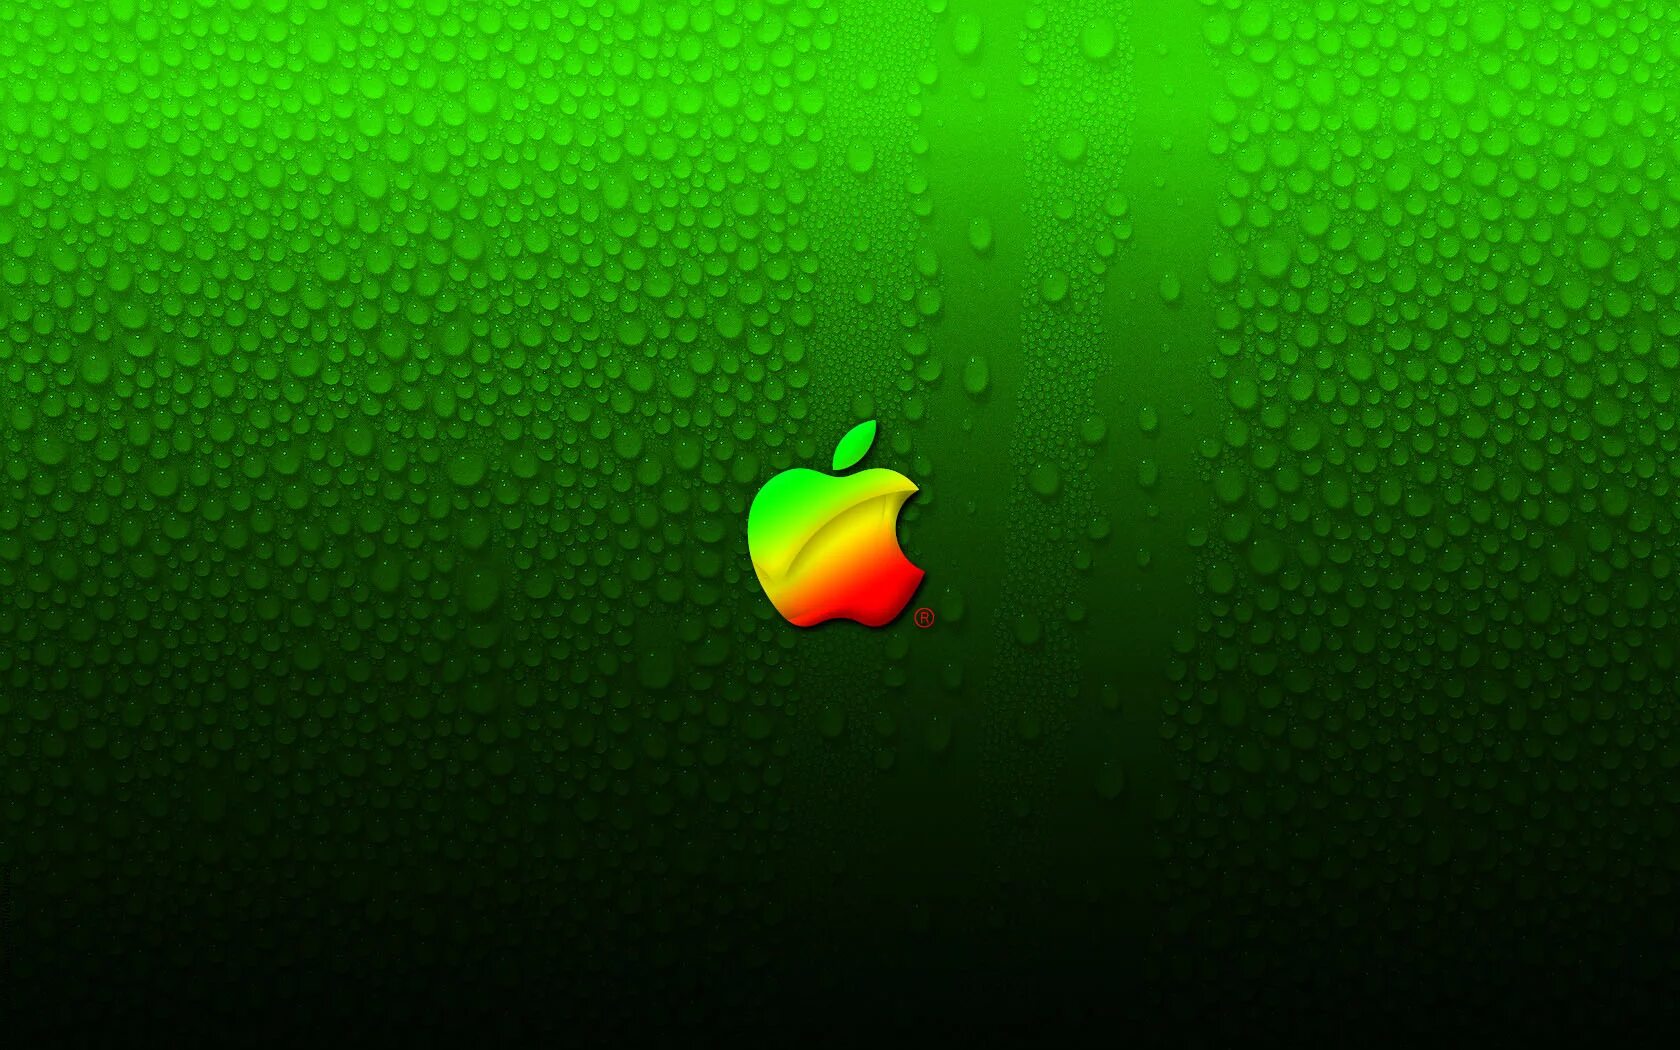 Обои на телефон 24. Зеленые обои. Зеленые обои на айфон. Обои Apple. Заставка на рабочий стол зеленая.